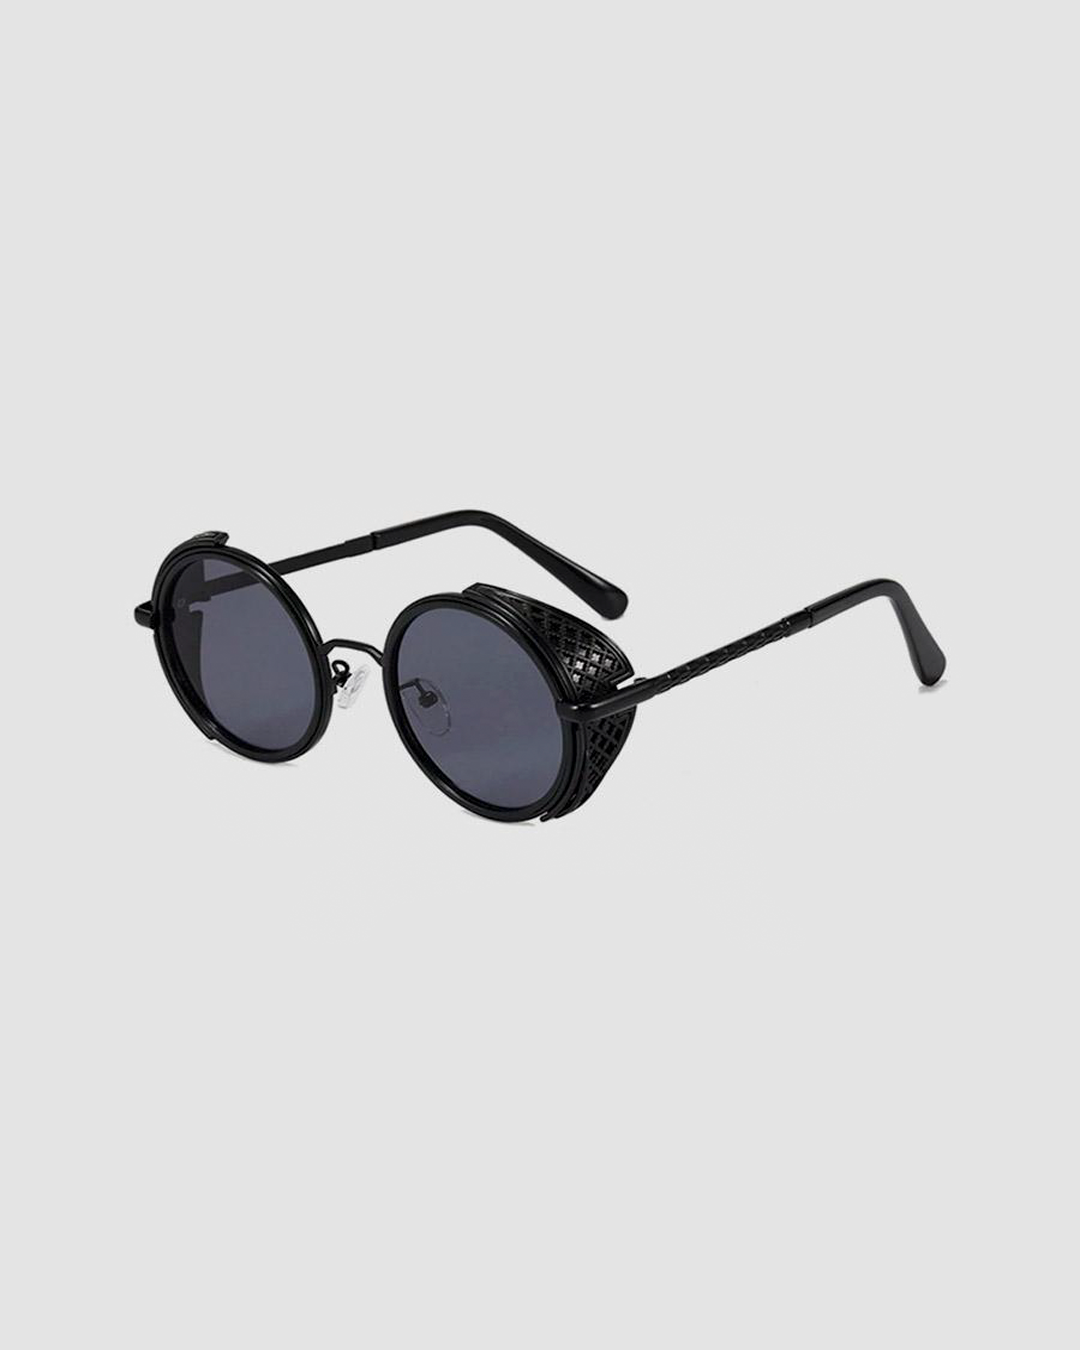 McBlythe Sunglasses